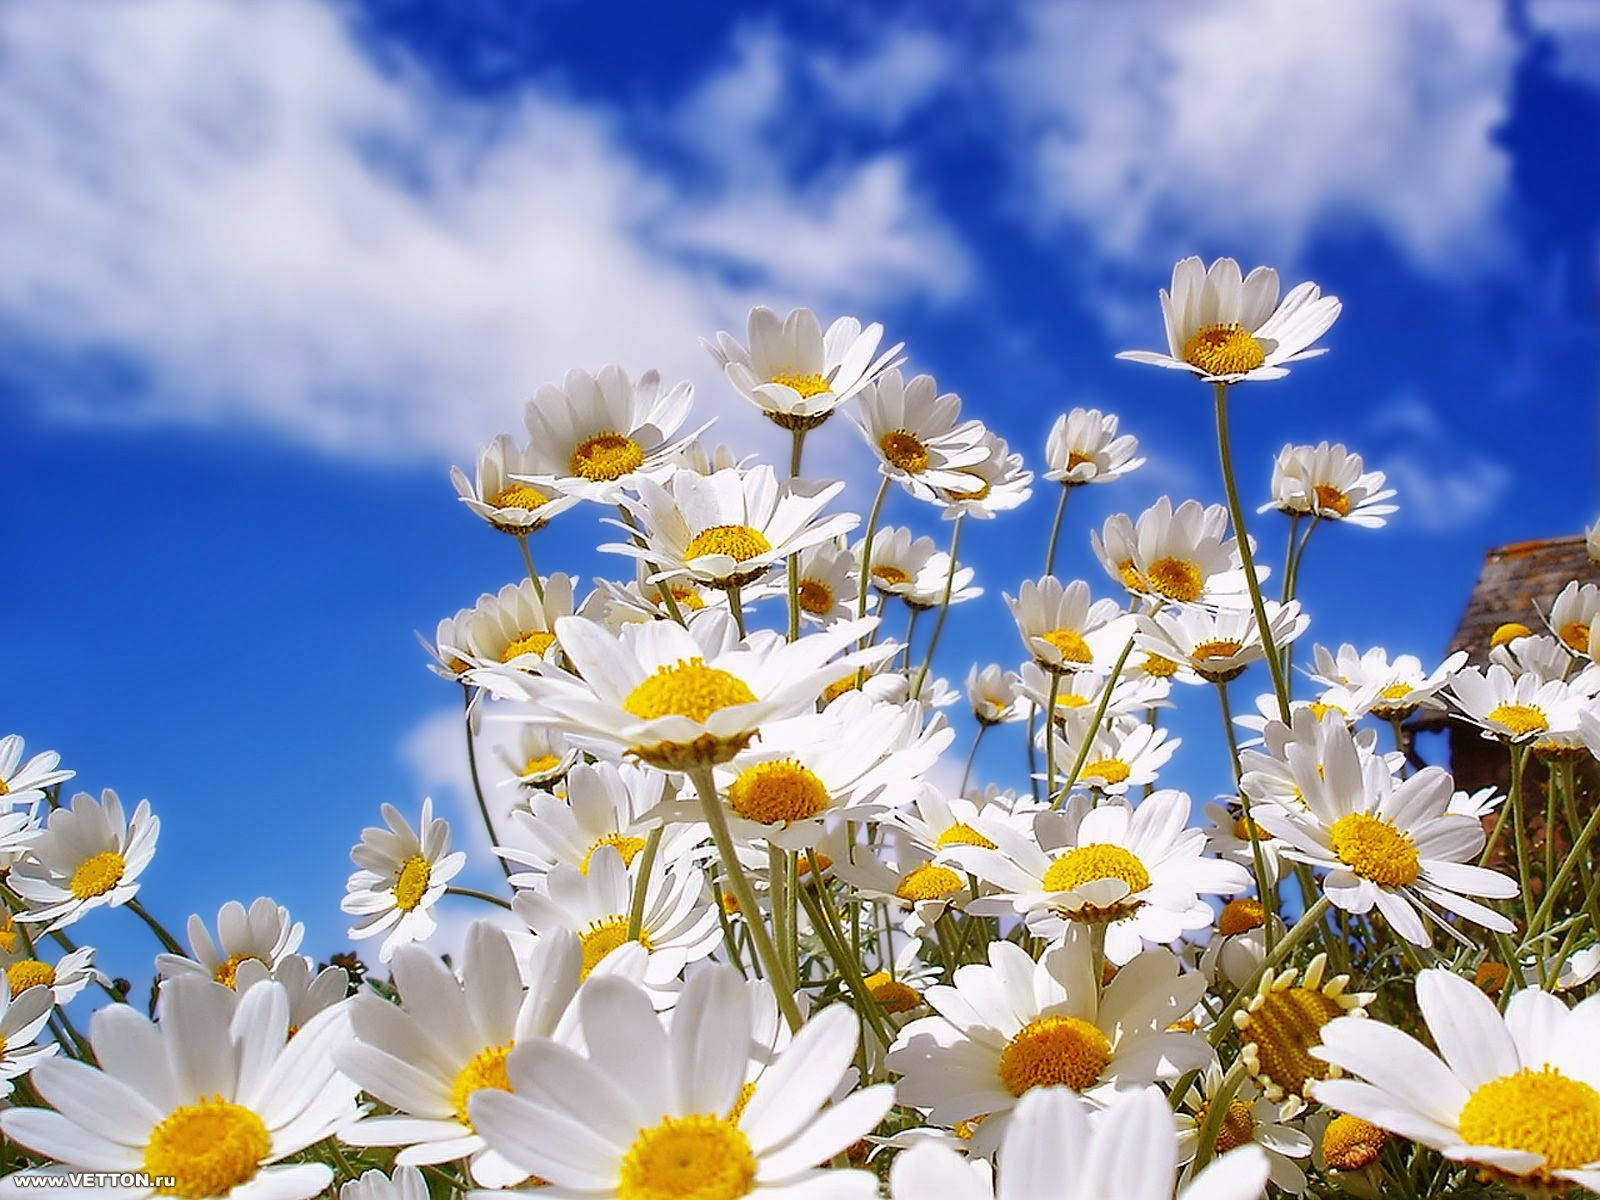 Erhellensie Ihren Tag Mit Sonnenblumen Und Rosen. Wallpaper